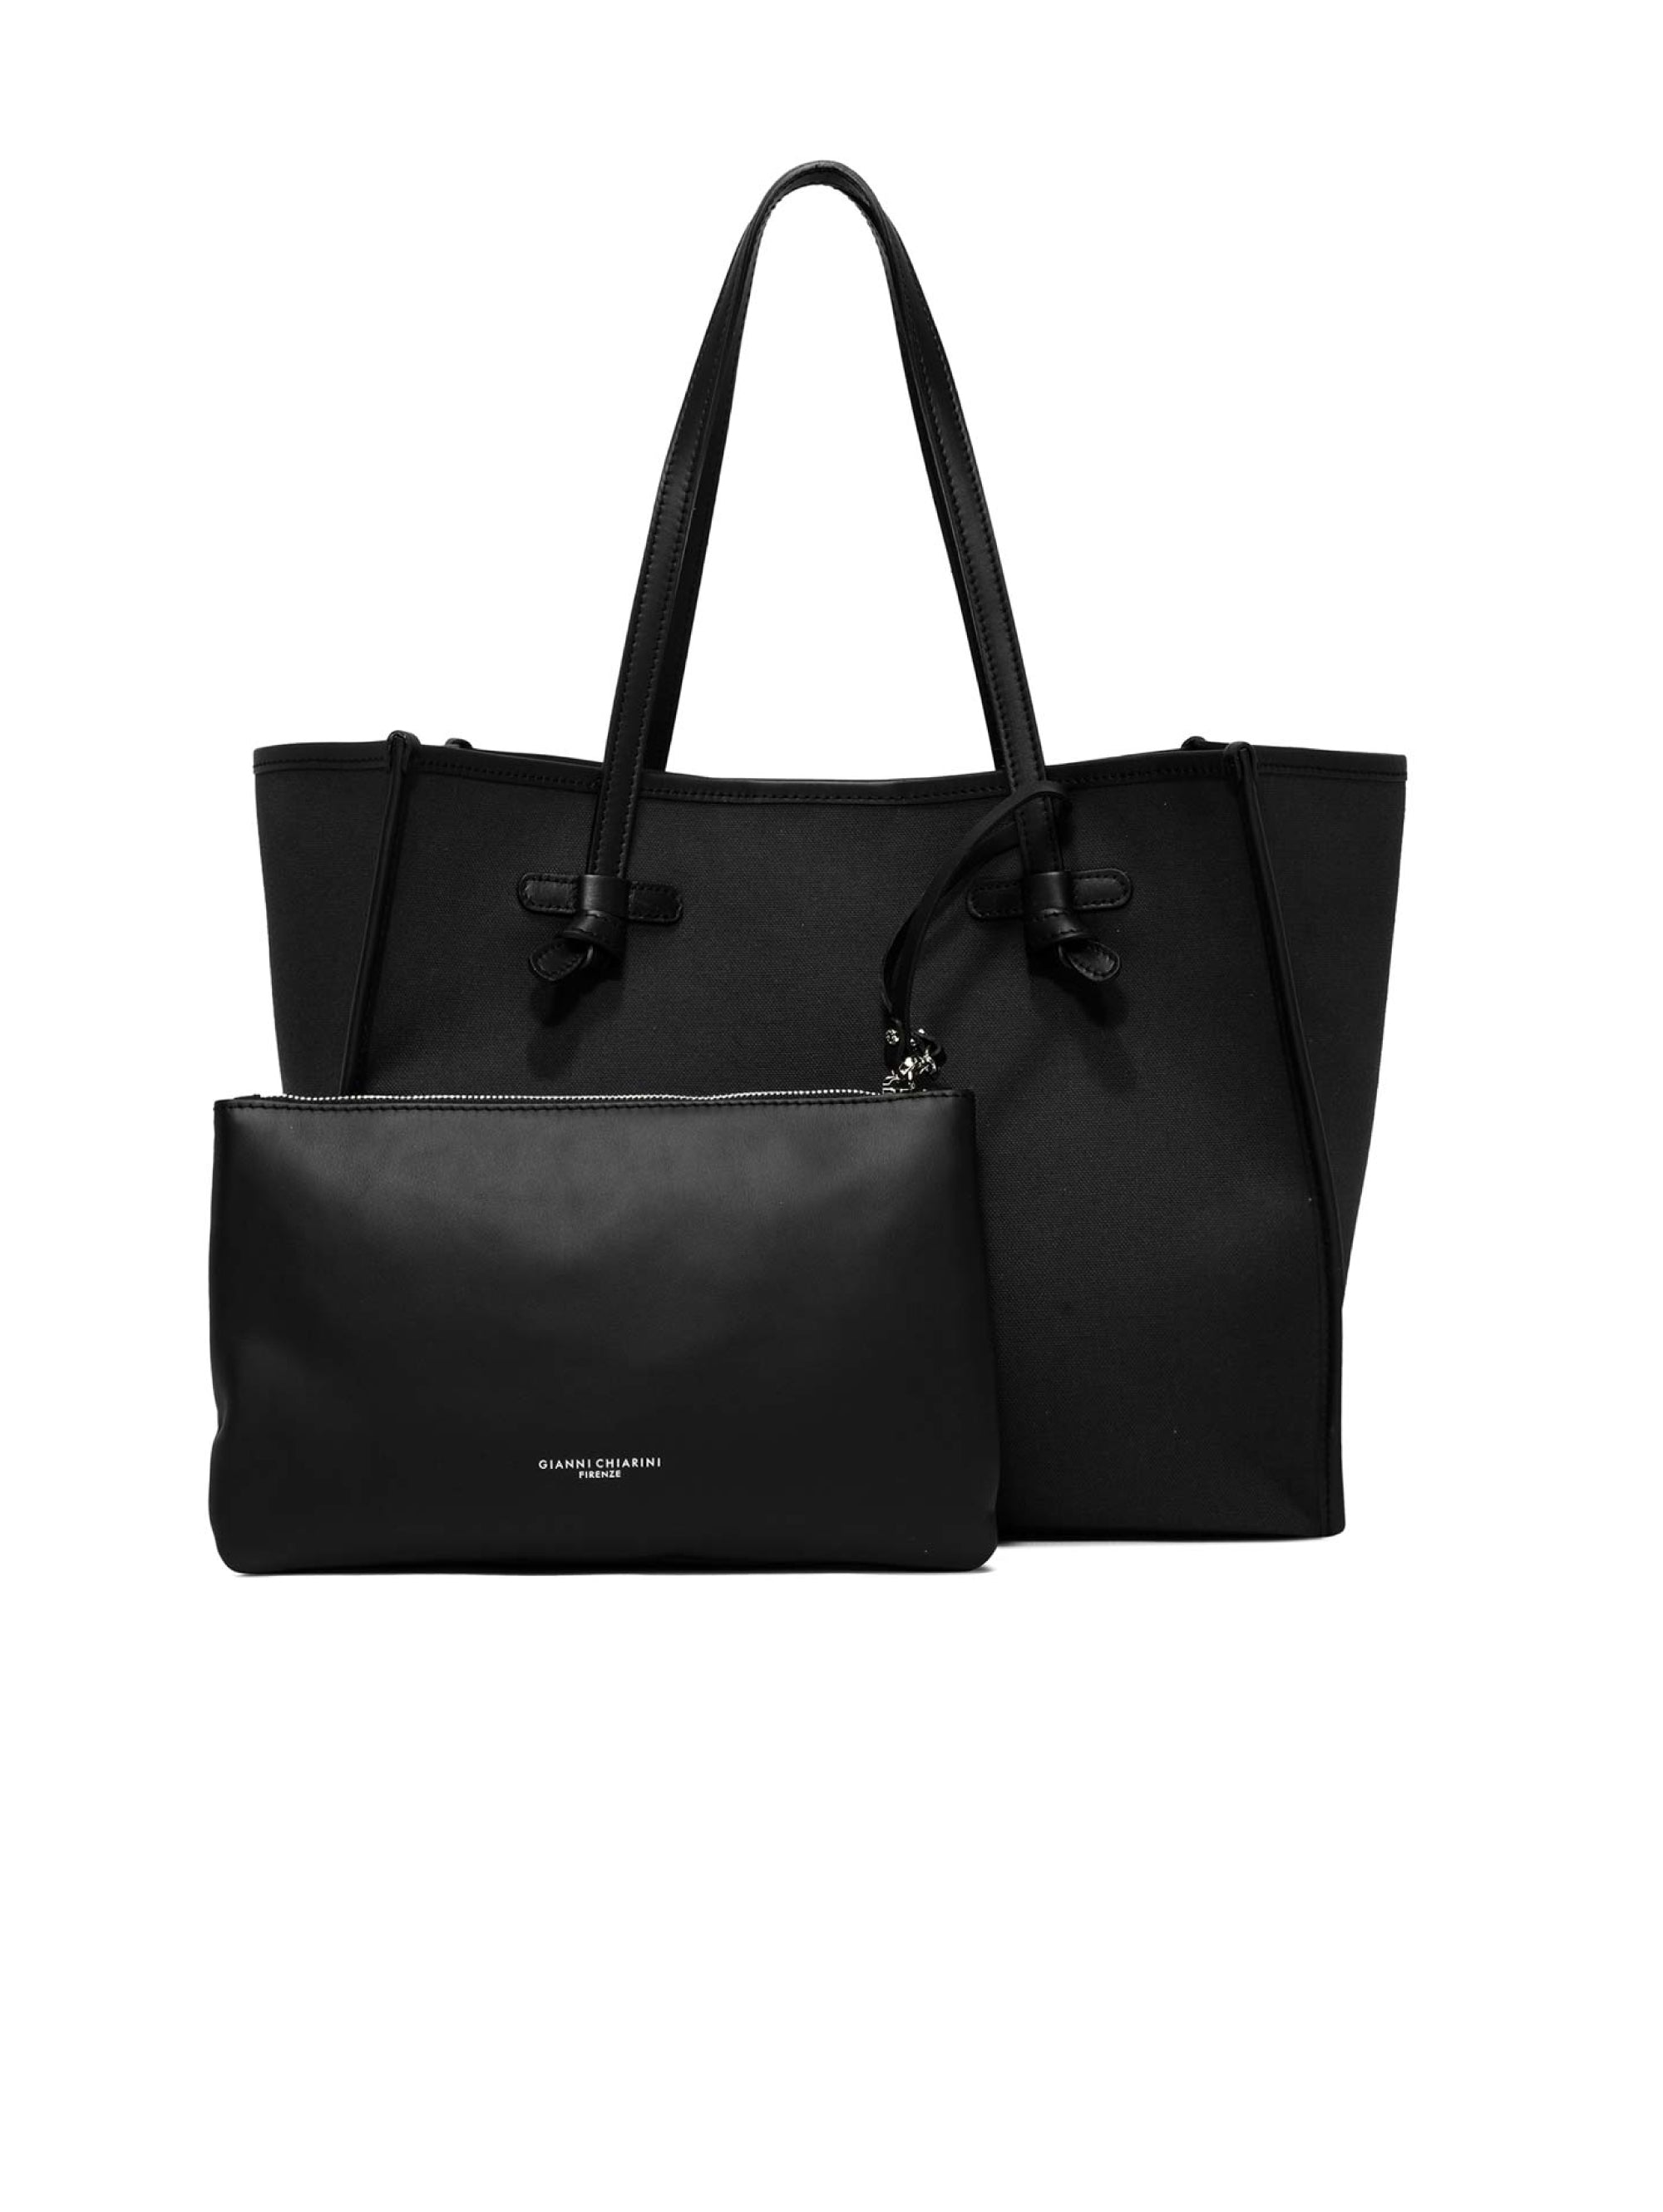 Shoulder Bag in Black/Rope Marcella Fabric